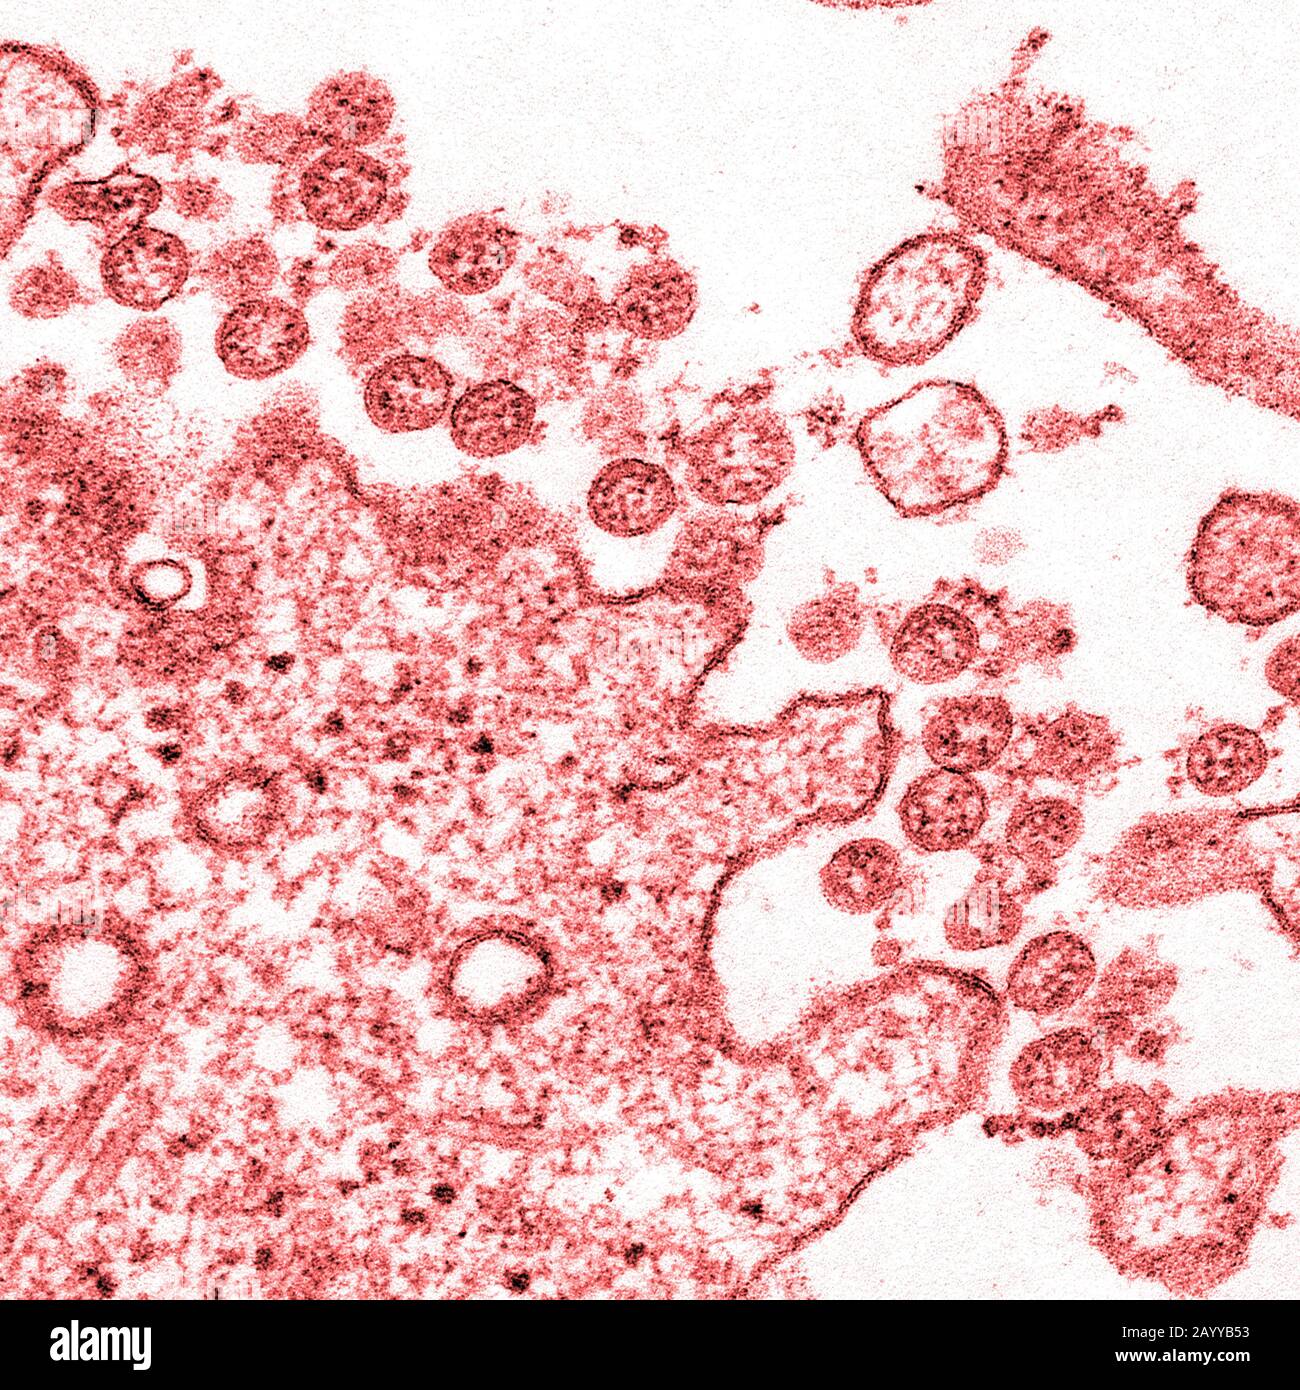 Immagine microscopica elettronica di trasmissione di un isolato dal primo caso USA di COVID-19, precedentemente noto come 2019-nCoV. Le particelle virali extracellulari sferiche contengono sezioni trasversali attraverso il genoma virale, viste come punti rossi. Foto Stock